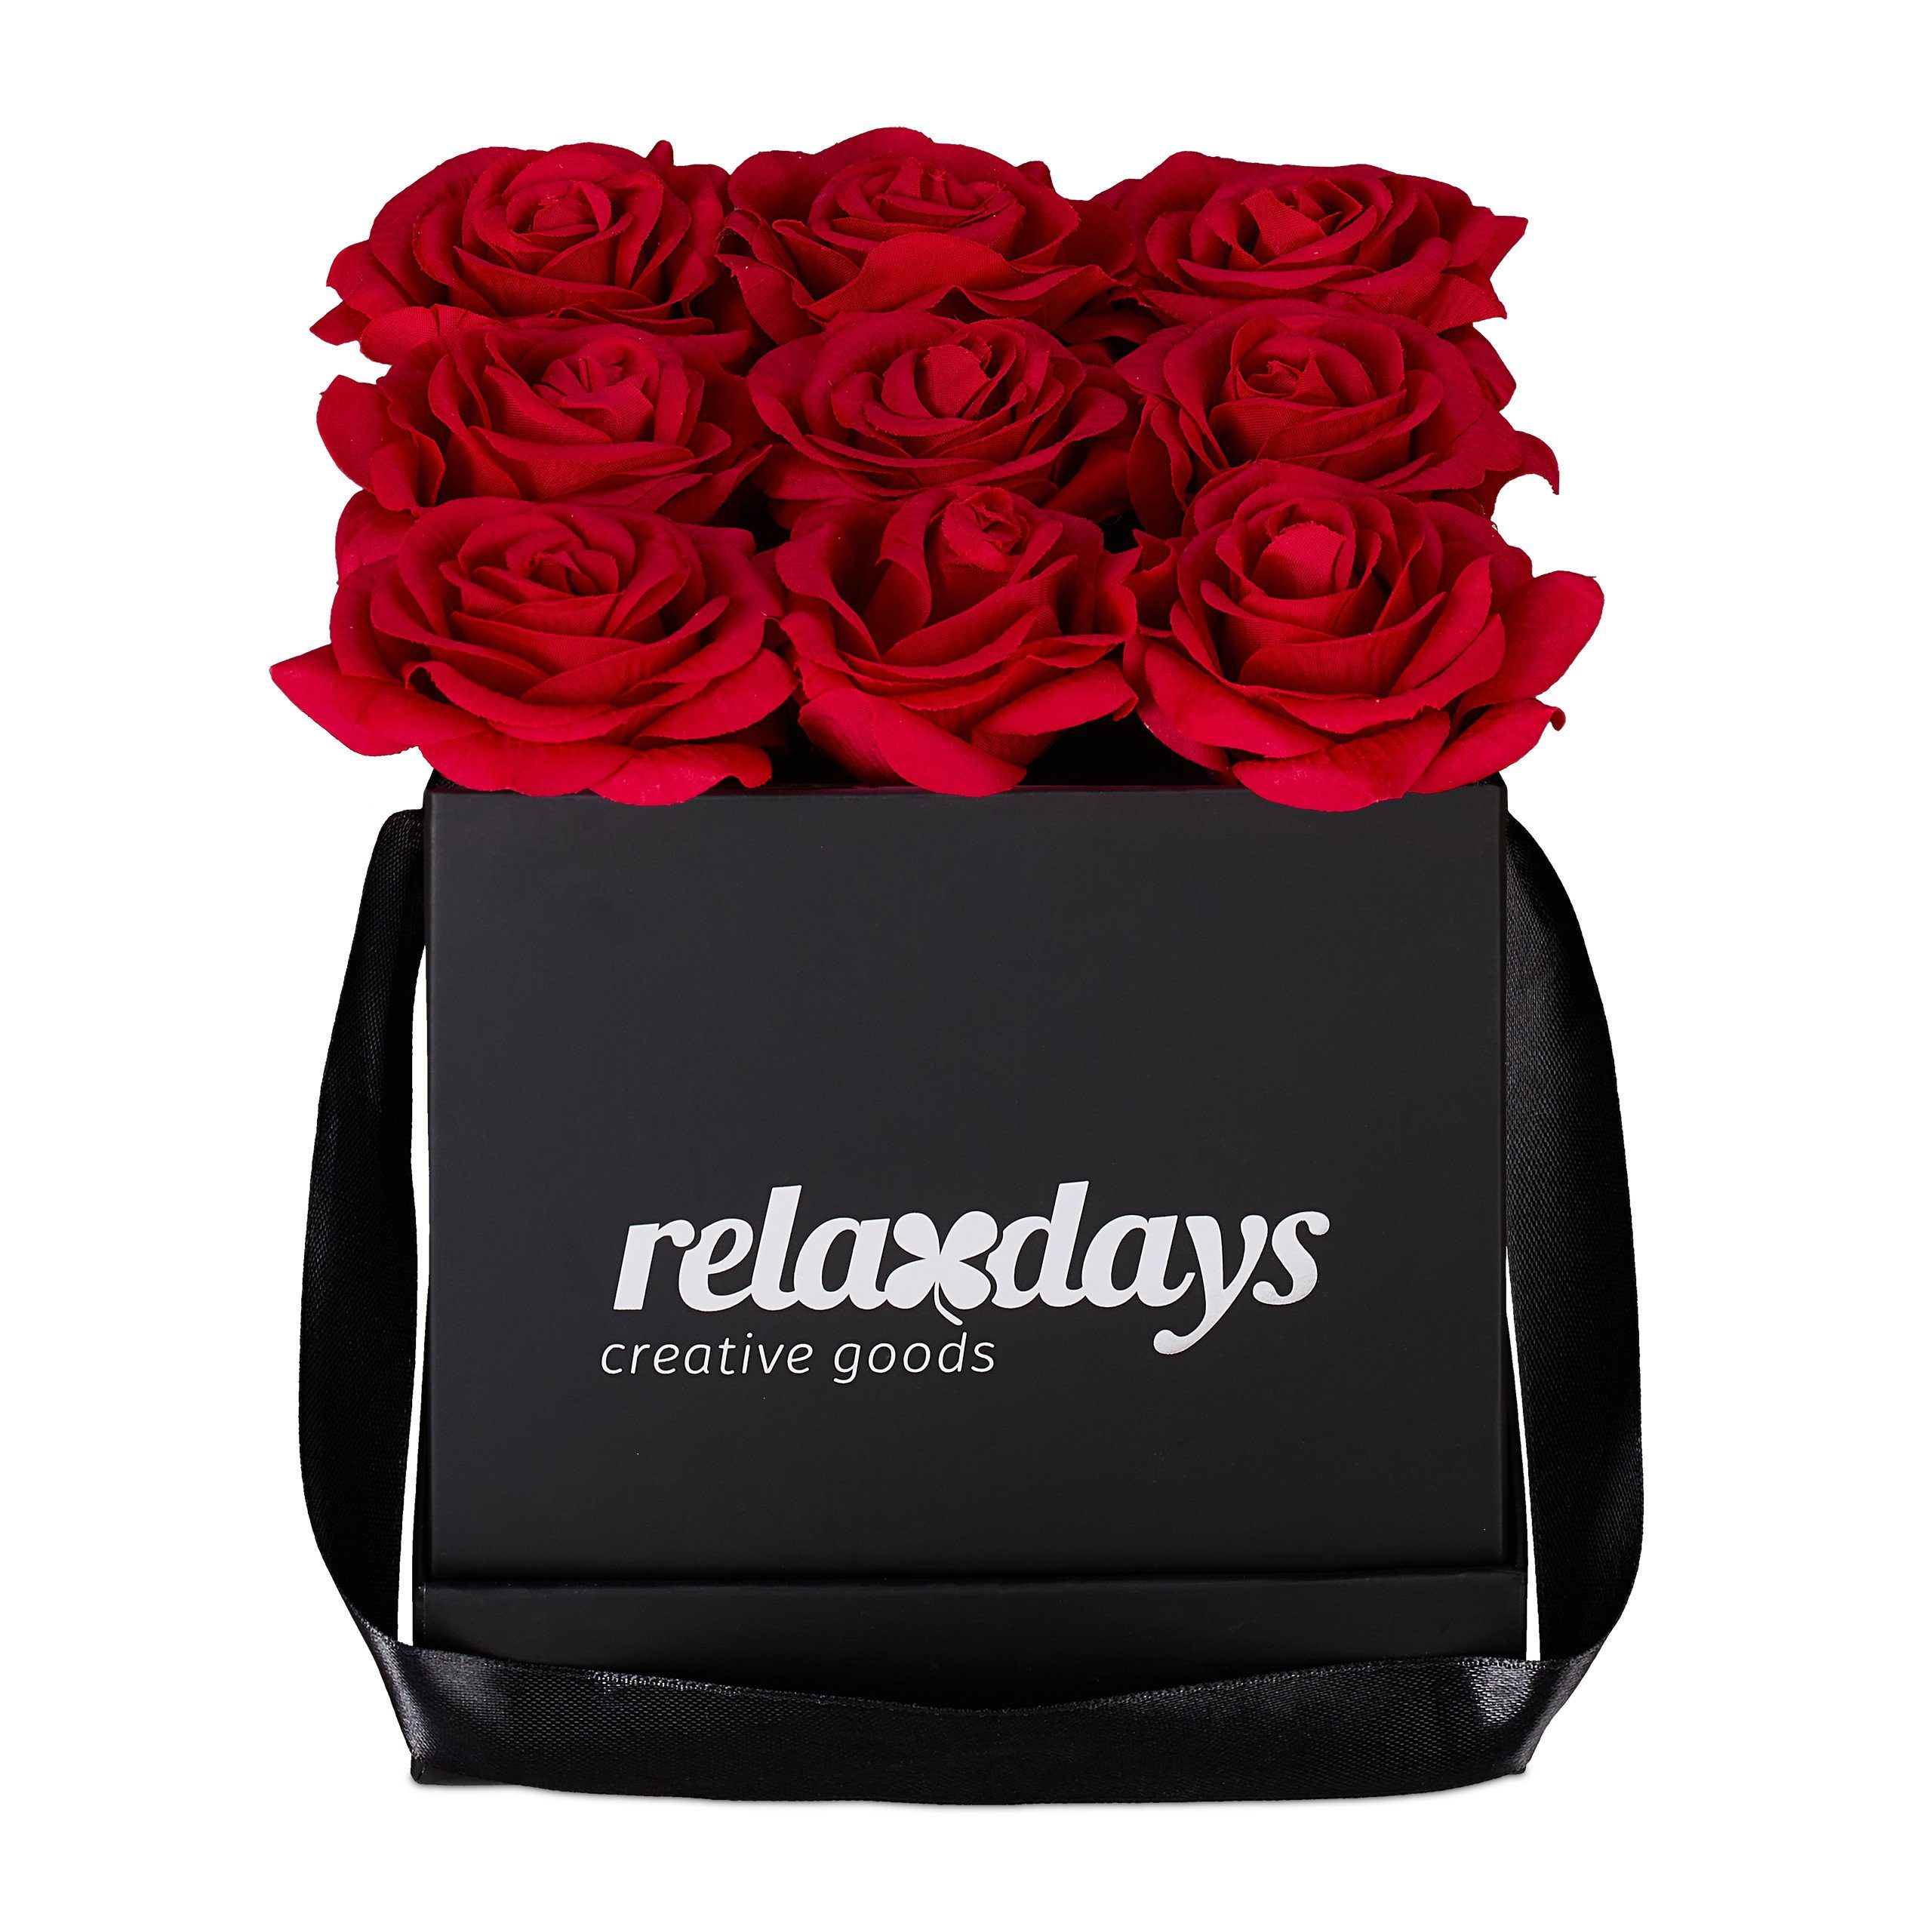 Gestecke Schwarze Rosenbox eckig mit 9 Rosen, relaxdays, Höhe 18 cm, Rot Rot Schwarz